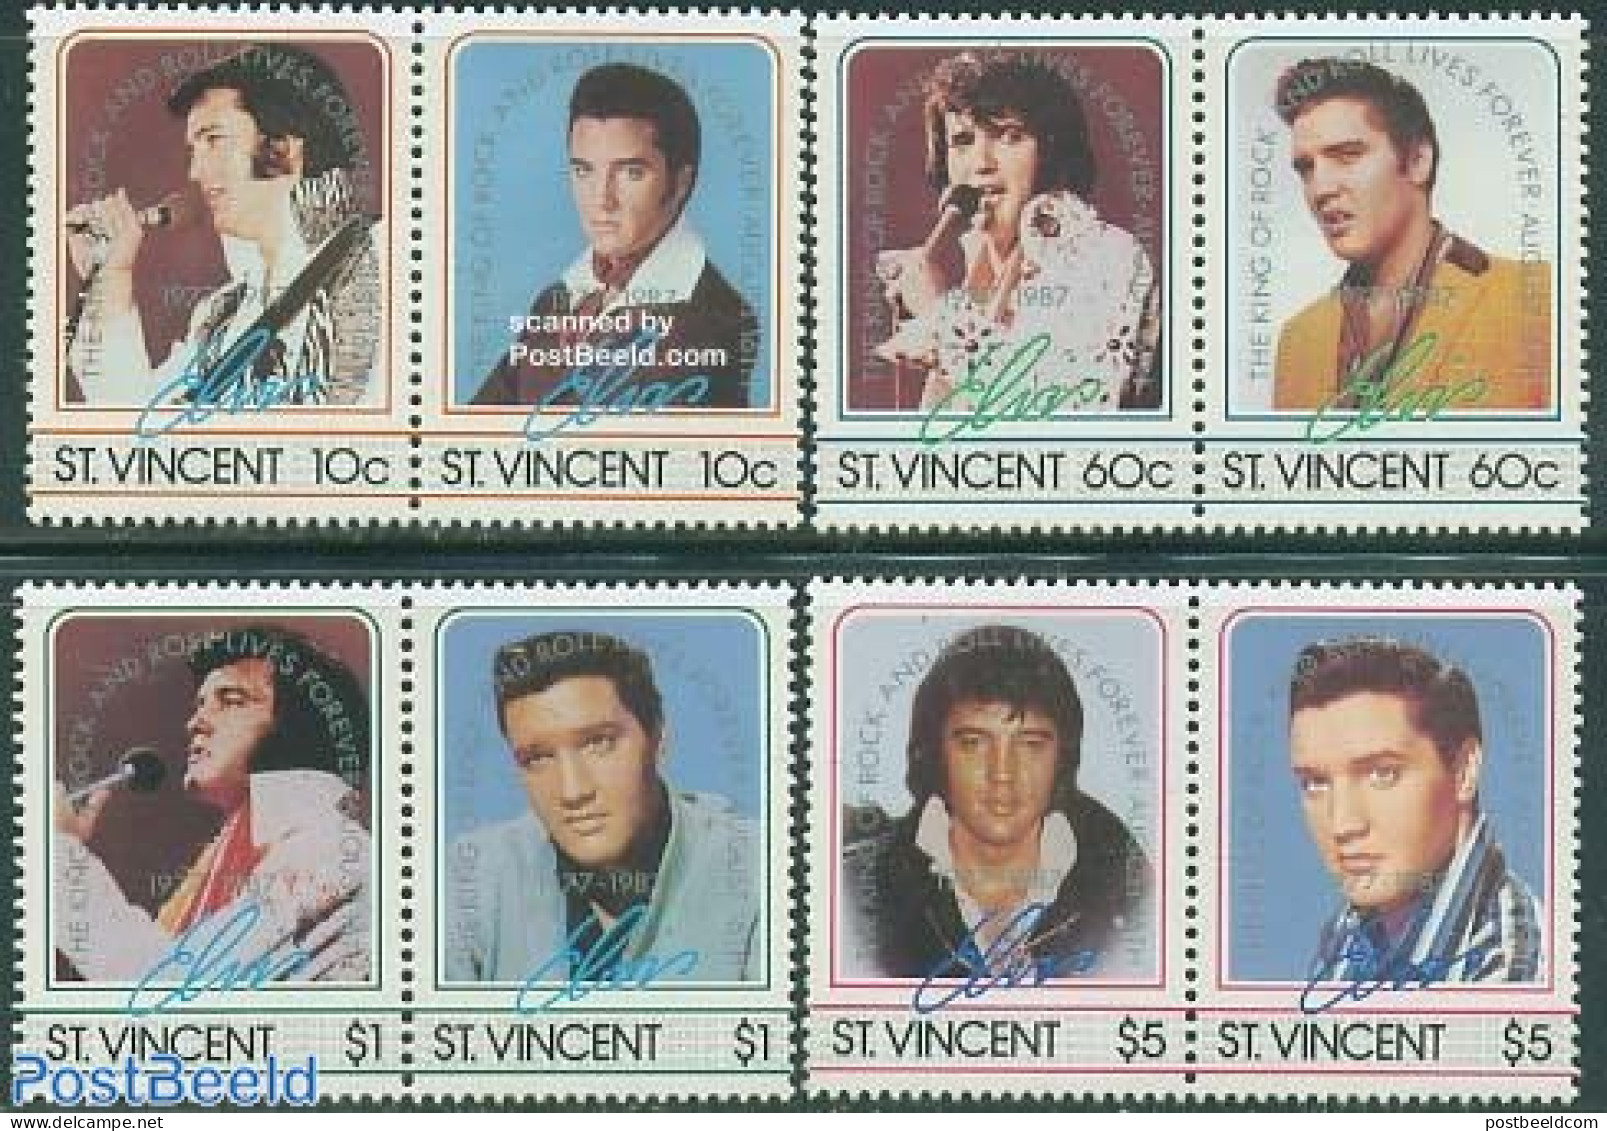 Saint Vincent 1987 Elvis Presley 4x2v [:] Overprints, Mint NH, Performance Art - Elvis Presley - Music - Popular Music - Elvis Presley